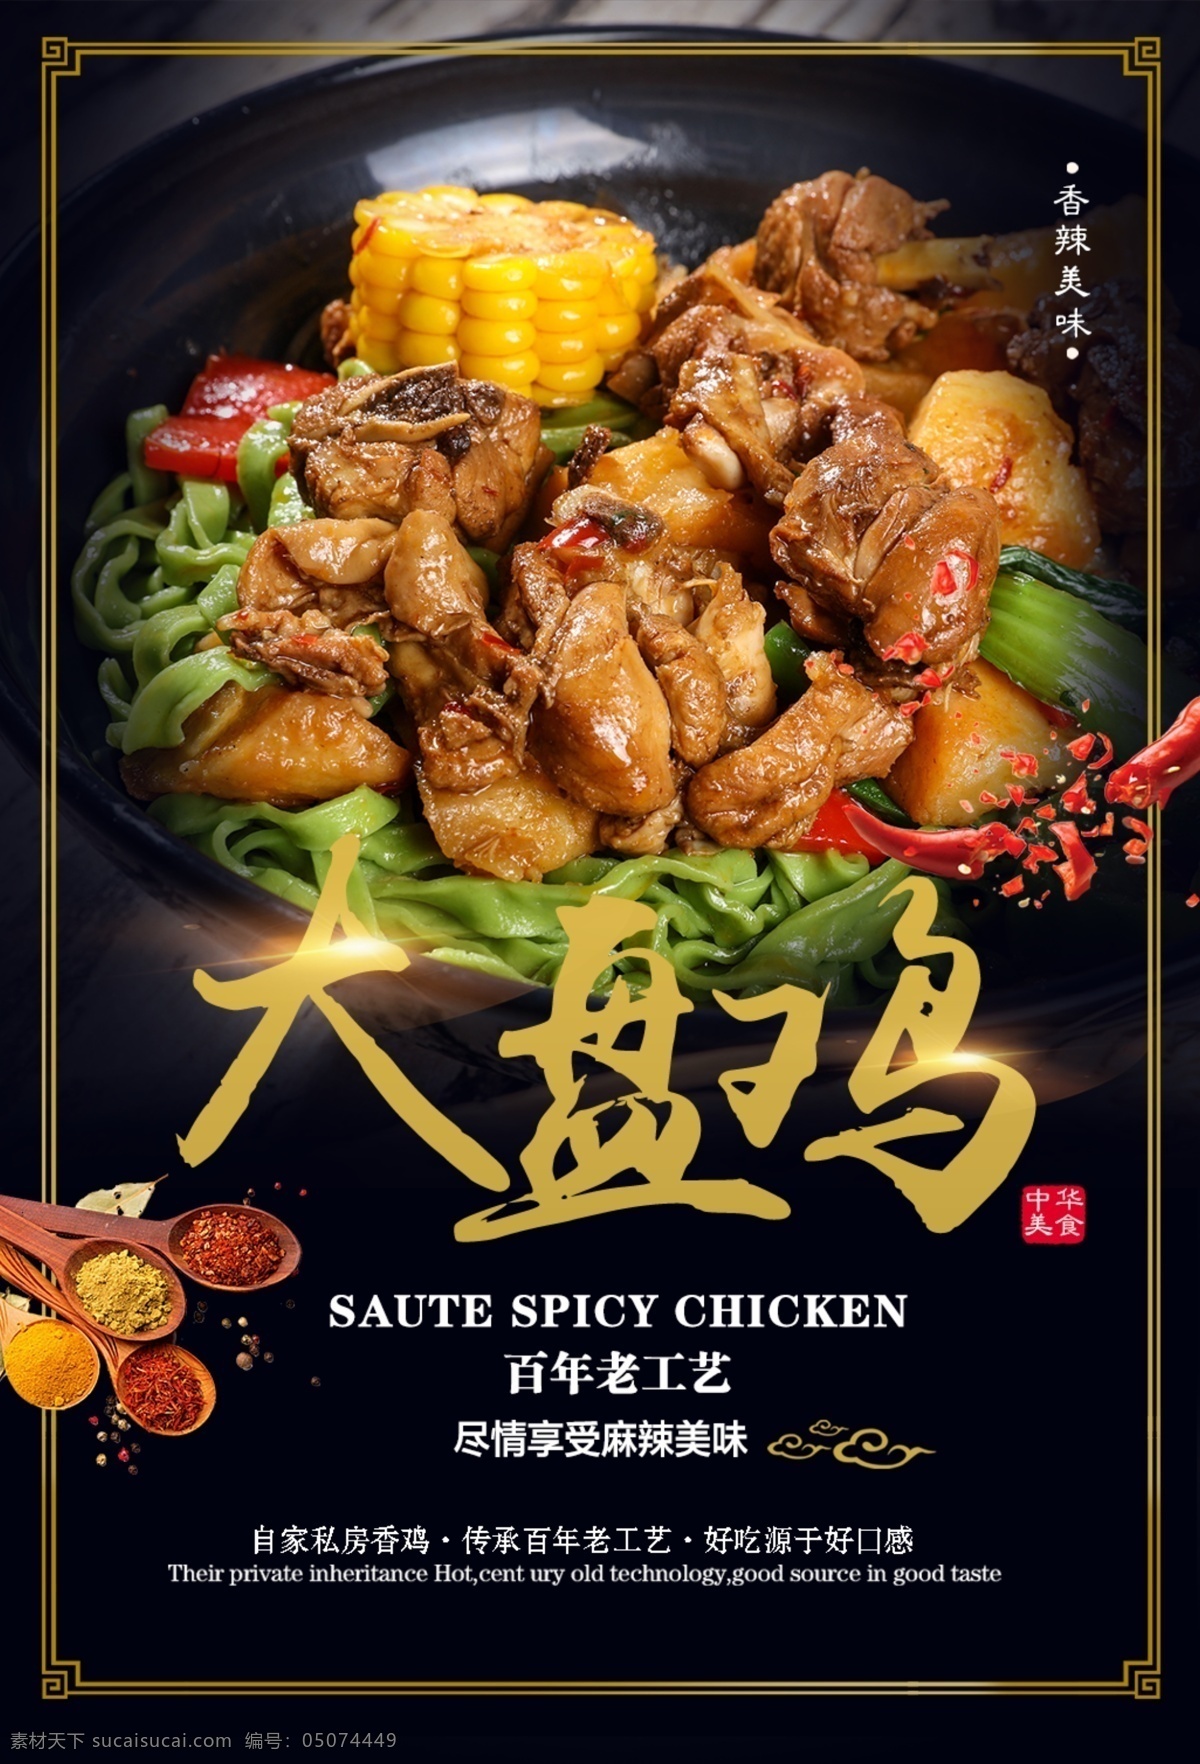 大盘鸡 美食 活动 宣传海报 素材图片 宣传 海报 餐饮美食 类